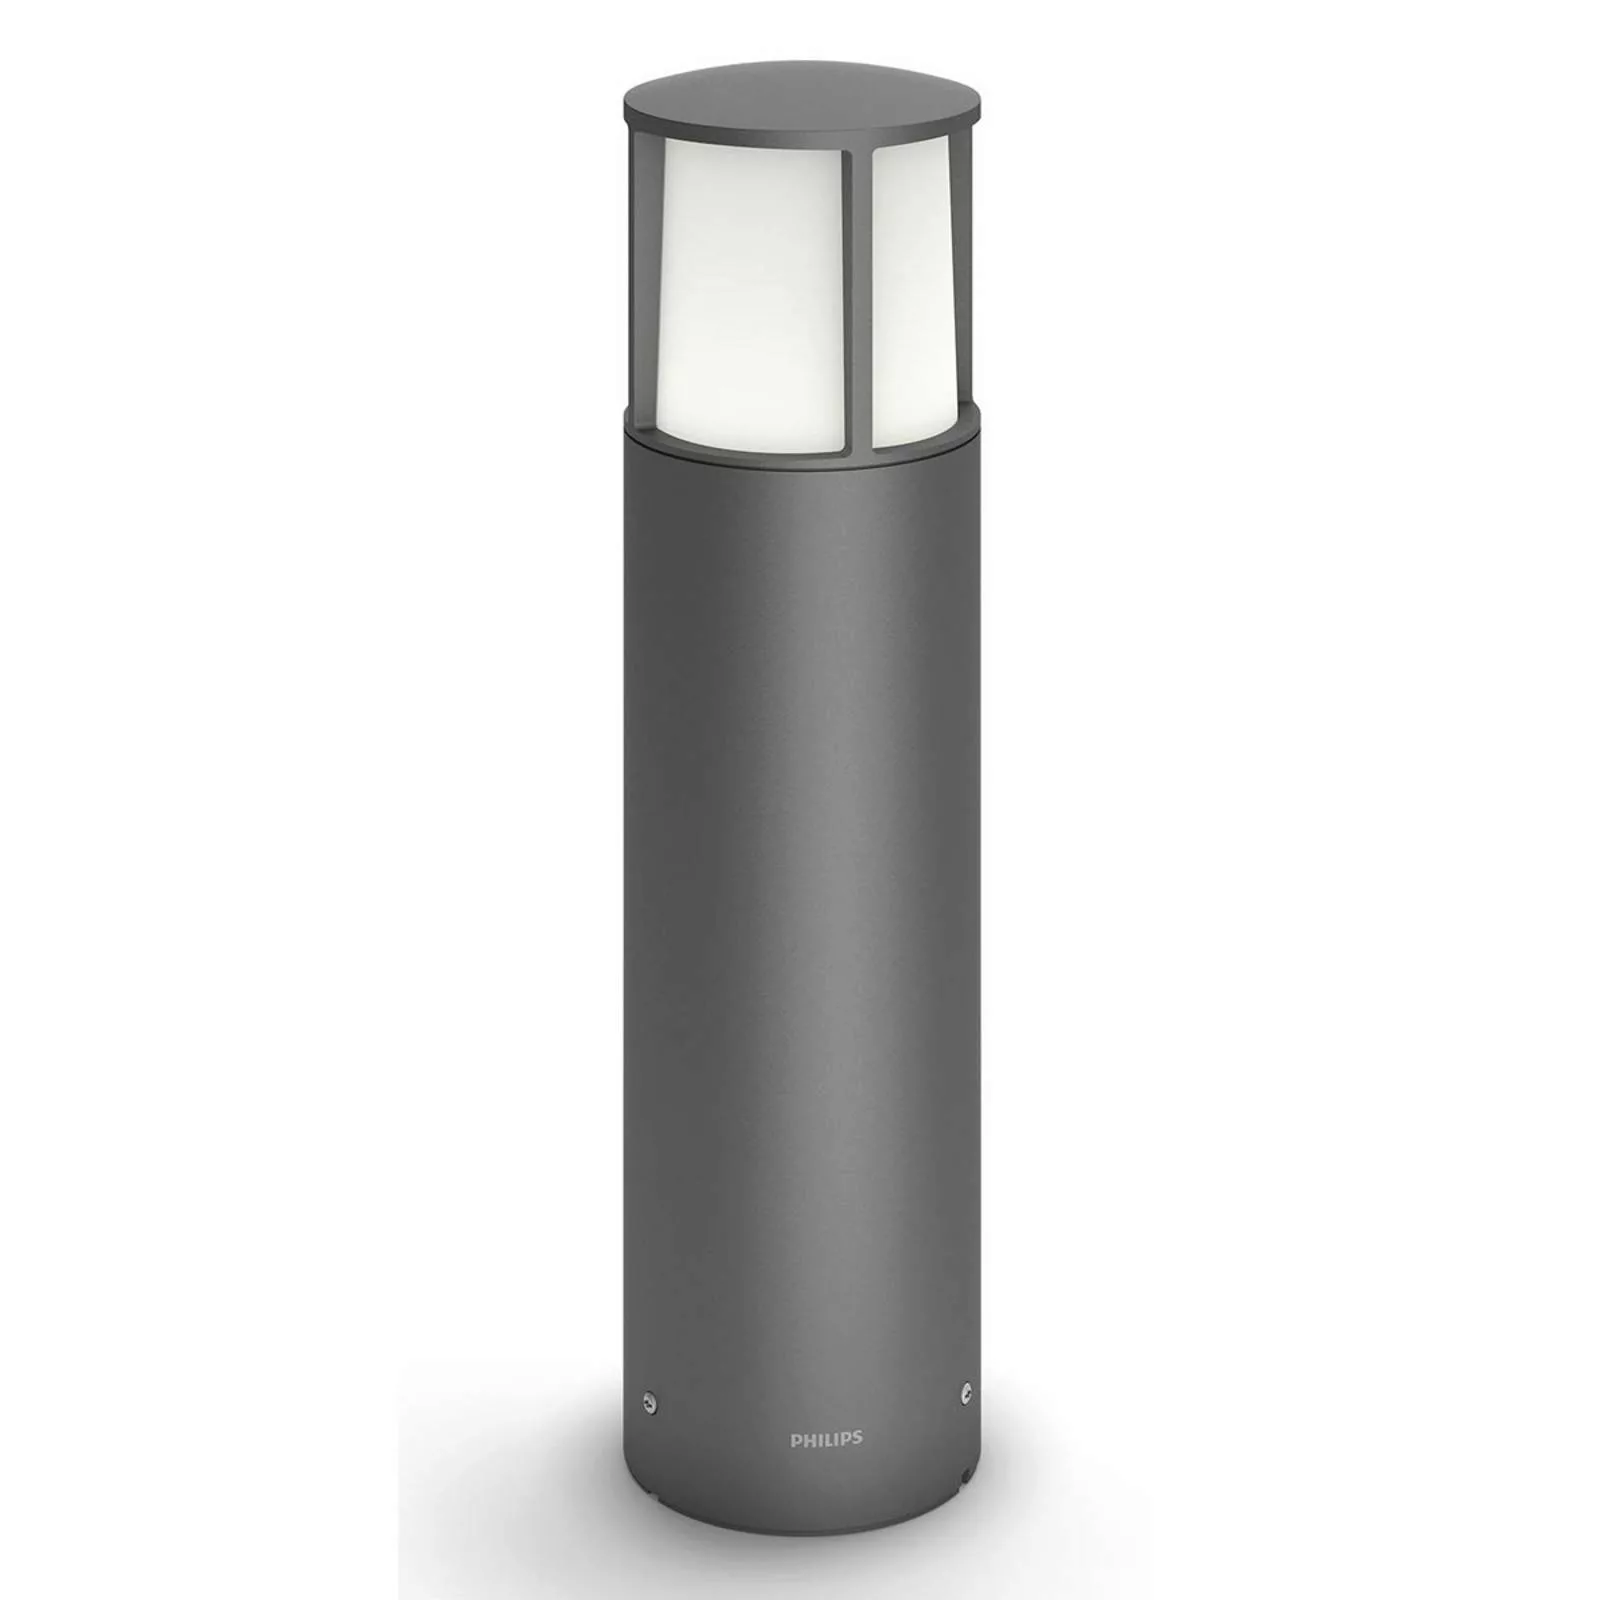 Modische LED Wegeleuchte Stock aus Aluminium in anthrazit, Höhe 440 mm günstig online kaufen